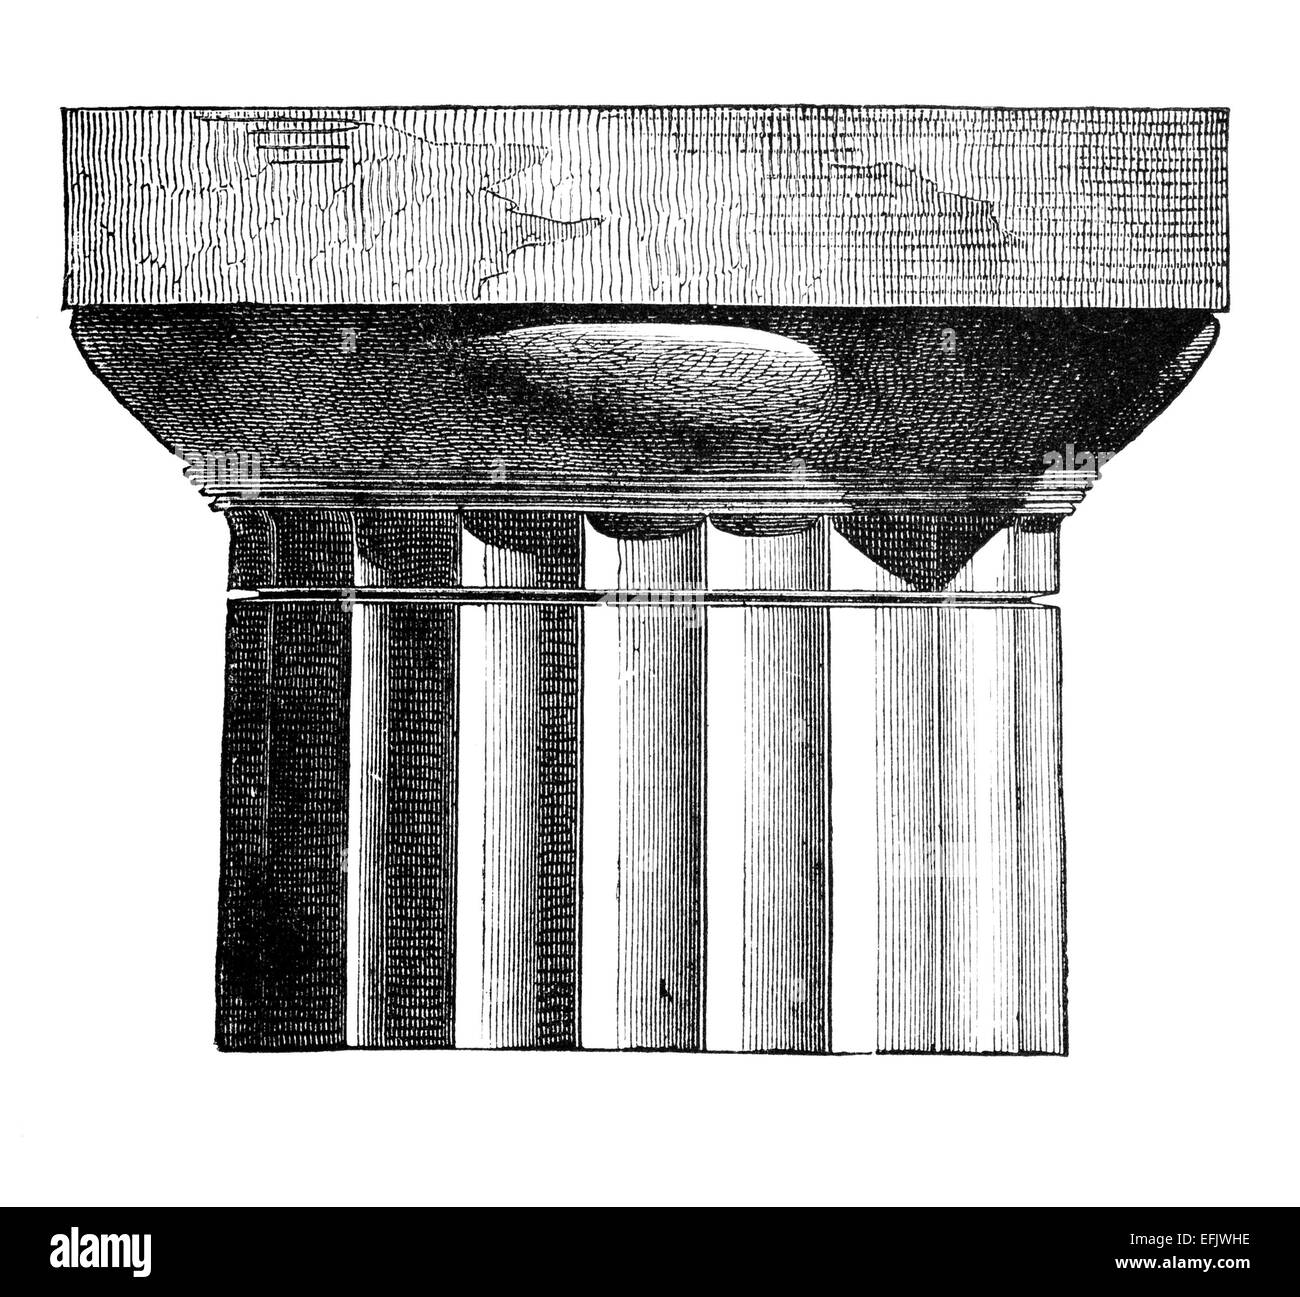 Incisione in stile vittoriano di una colonna in stile dorico capitale. Restaurata digitalmente immagine da una metà del XIX secolo enciclopedia. Foto Stock